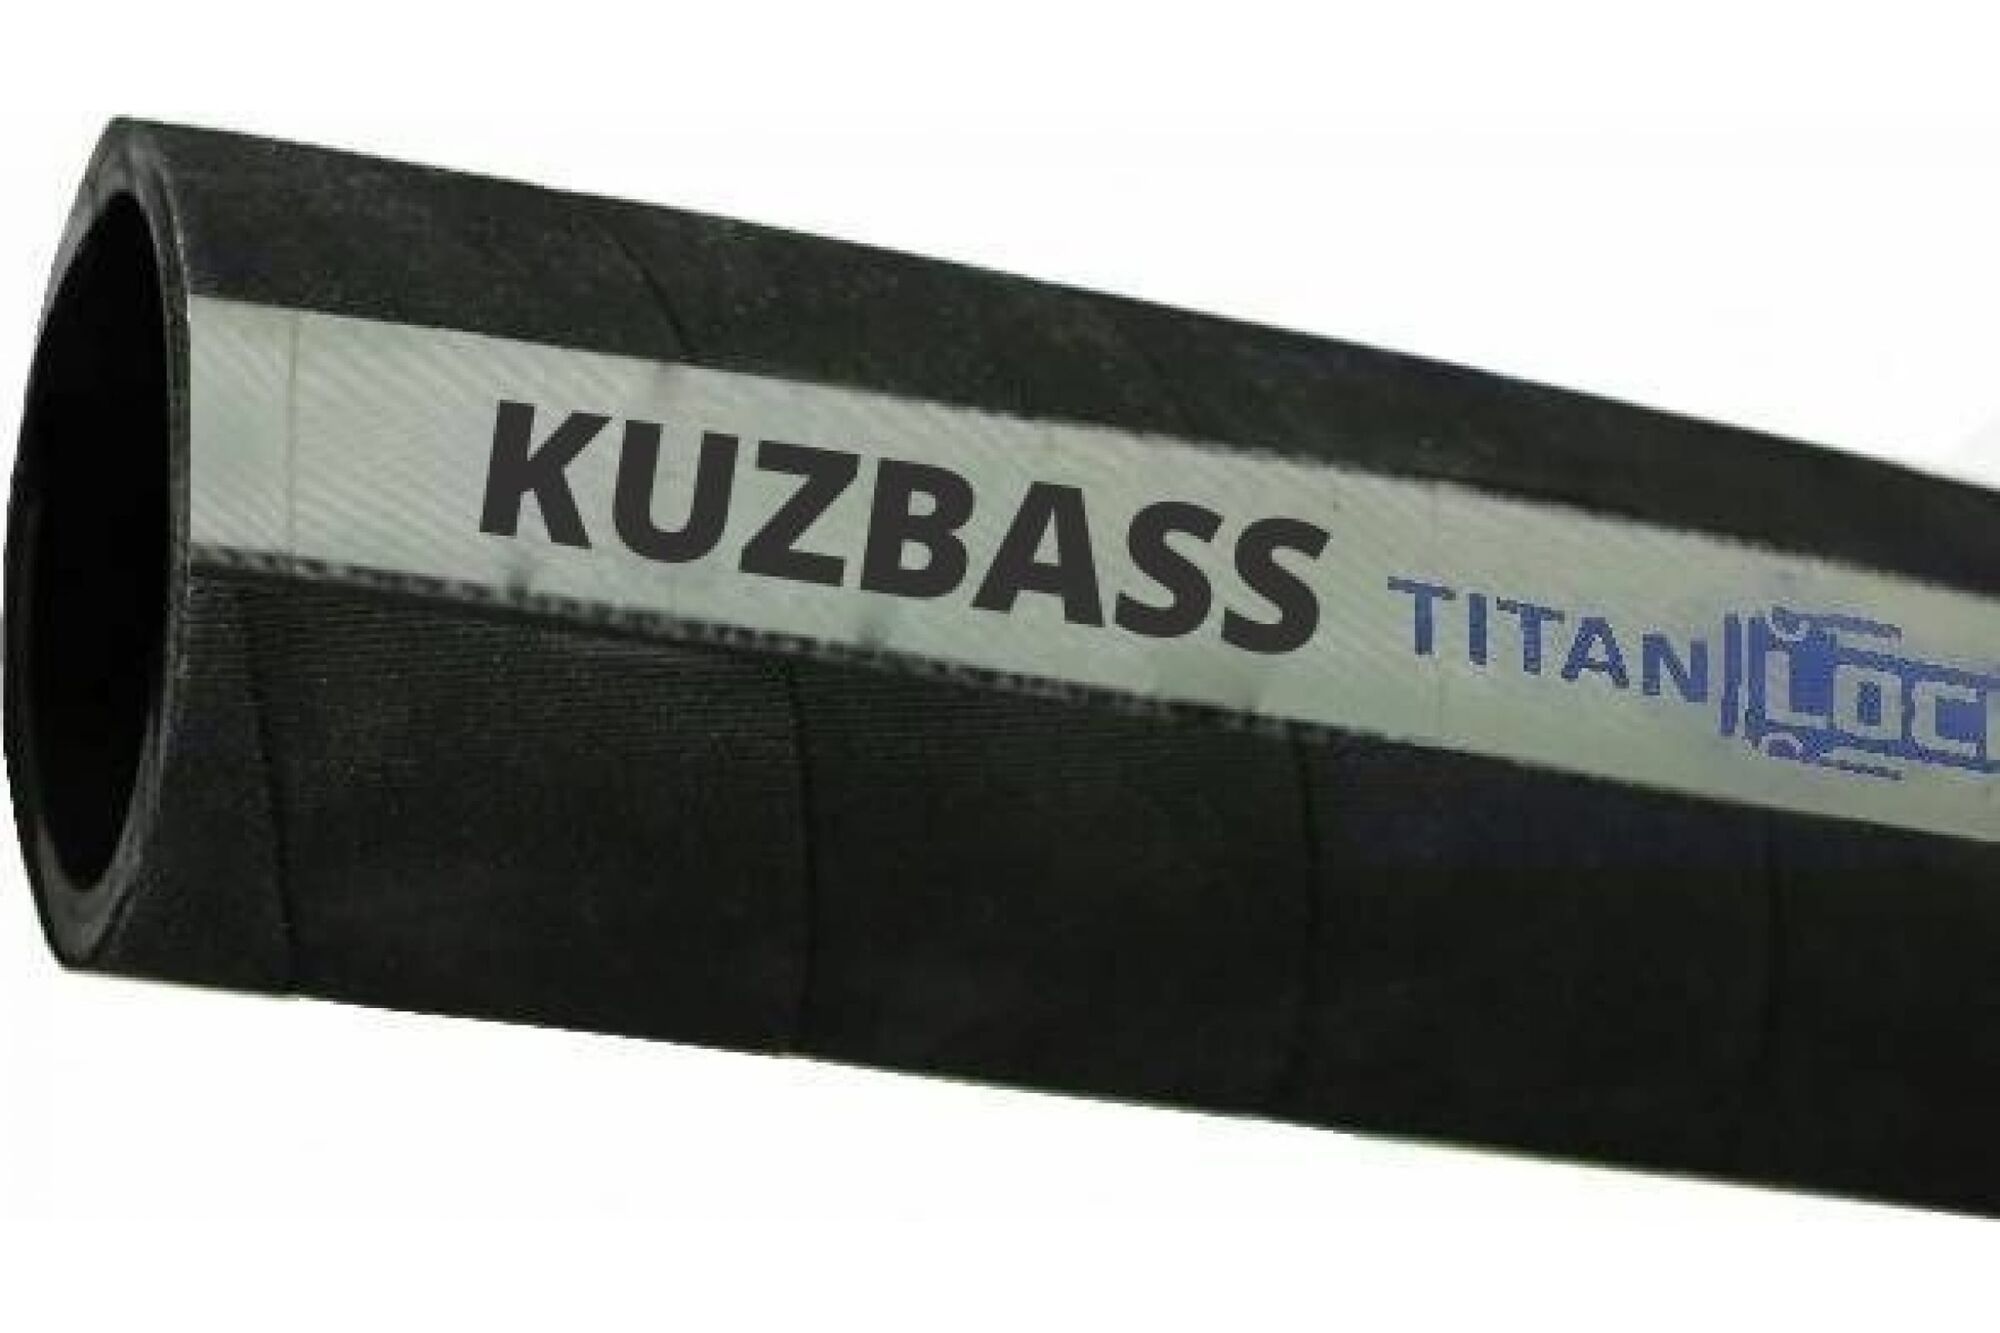 Рукав для сыпучих материалов и абразива TITAN LOCK'KUZBASS' внутренний диаметр 102 мм, 10 м, 4 in, 10 bar, н/в TL100KB